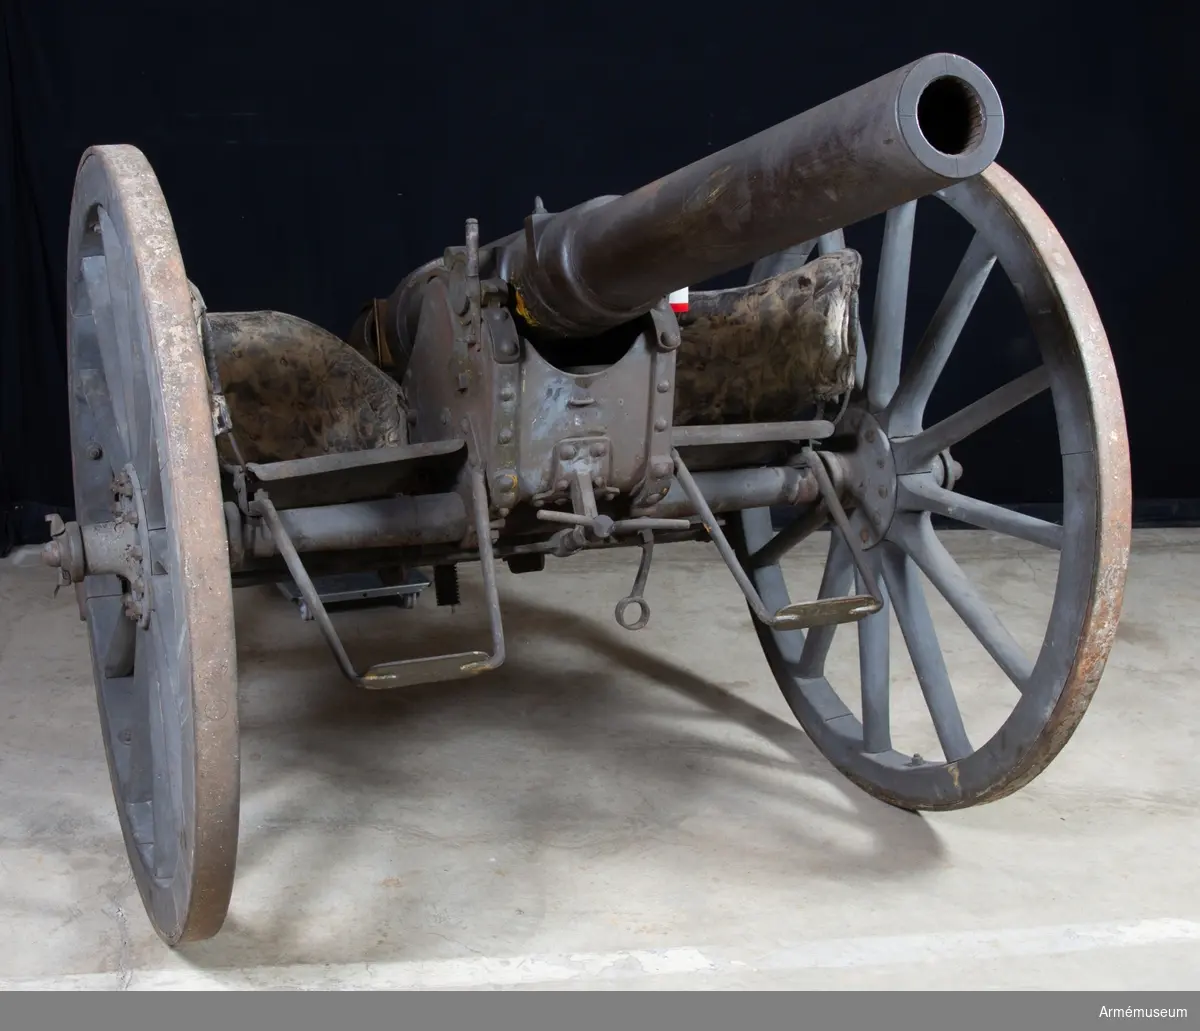 Grupp F I. 
Eldrör till 8,7 cm kanon, Krupp, med mekanism och tätring. 
Tnr 1. Tillverkad 1875.